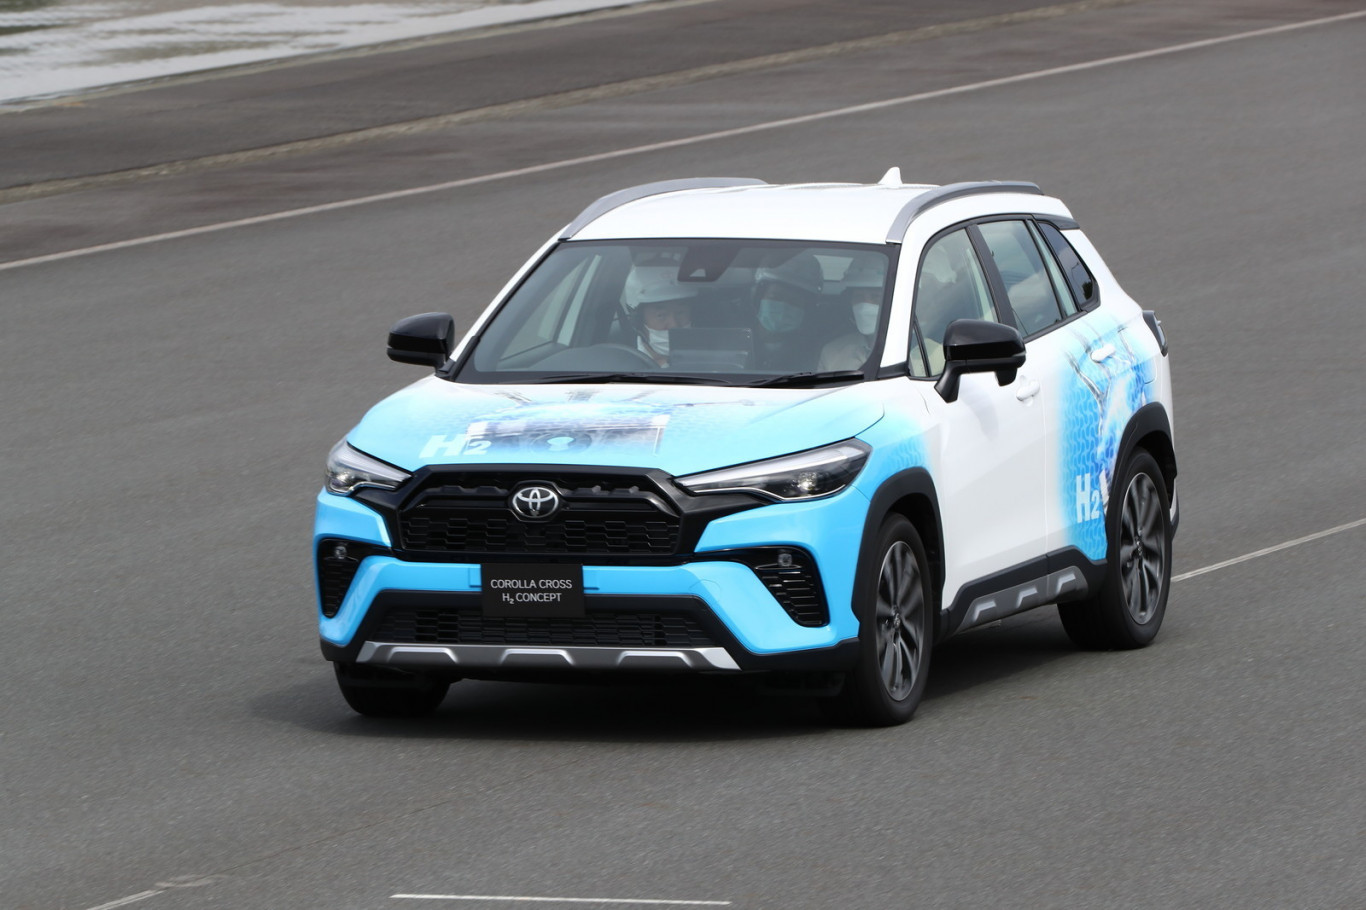 Vesinikpõlemismootoriga ideeauto Corolla Cross H2 näitab Toyota mitmekülgset lähenemist süsinikuneutraalsusele.